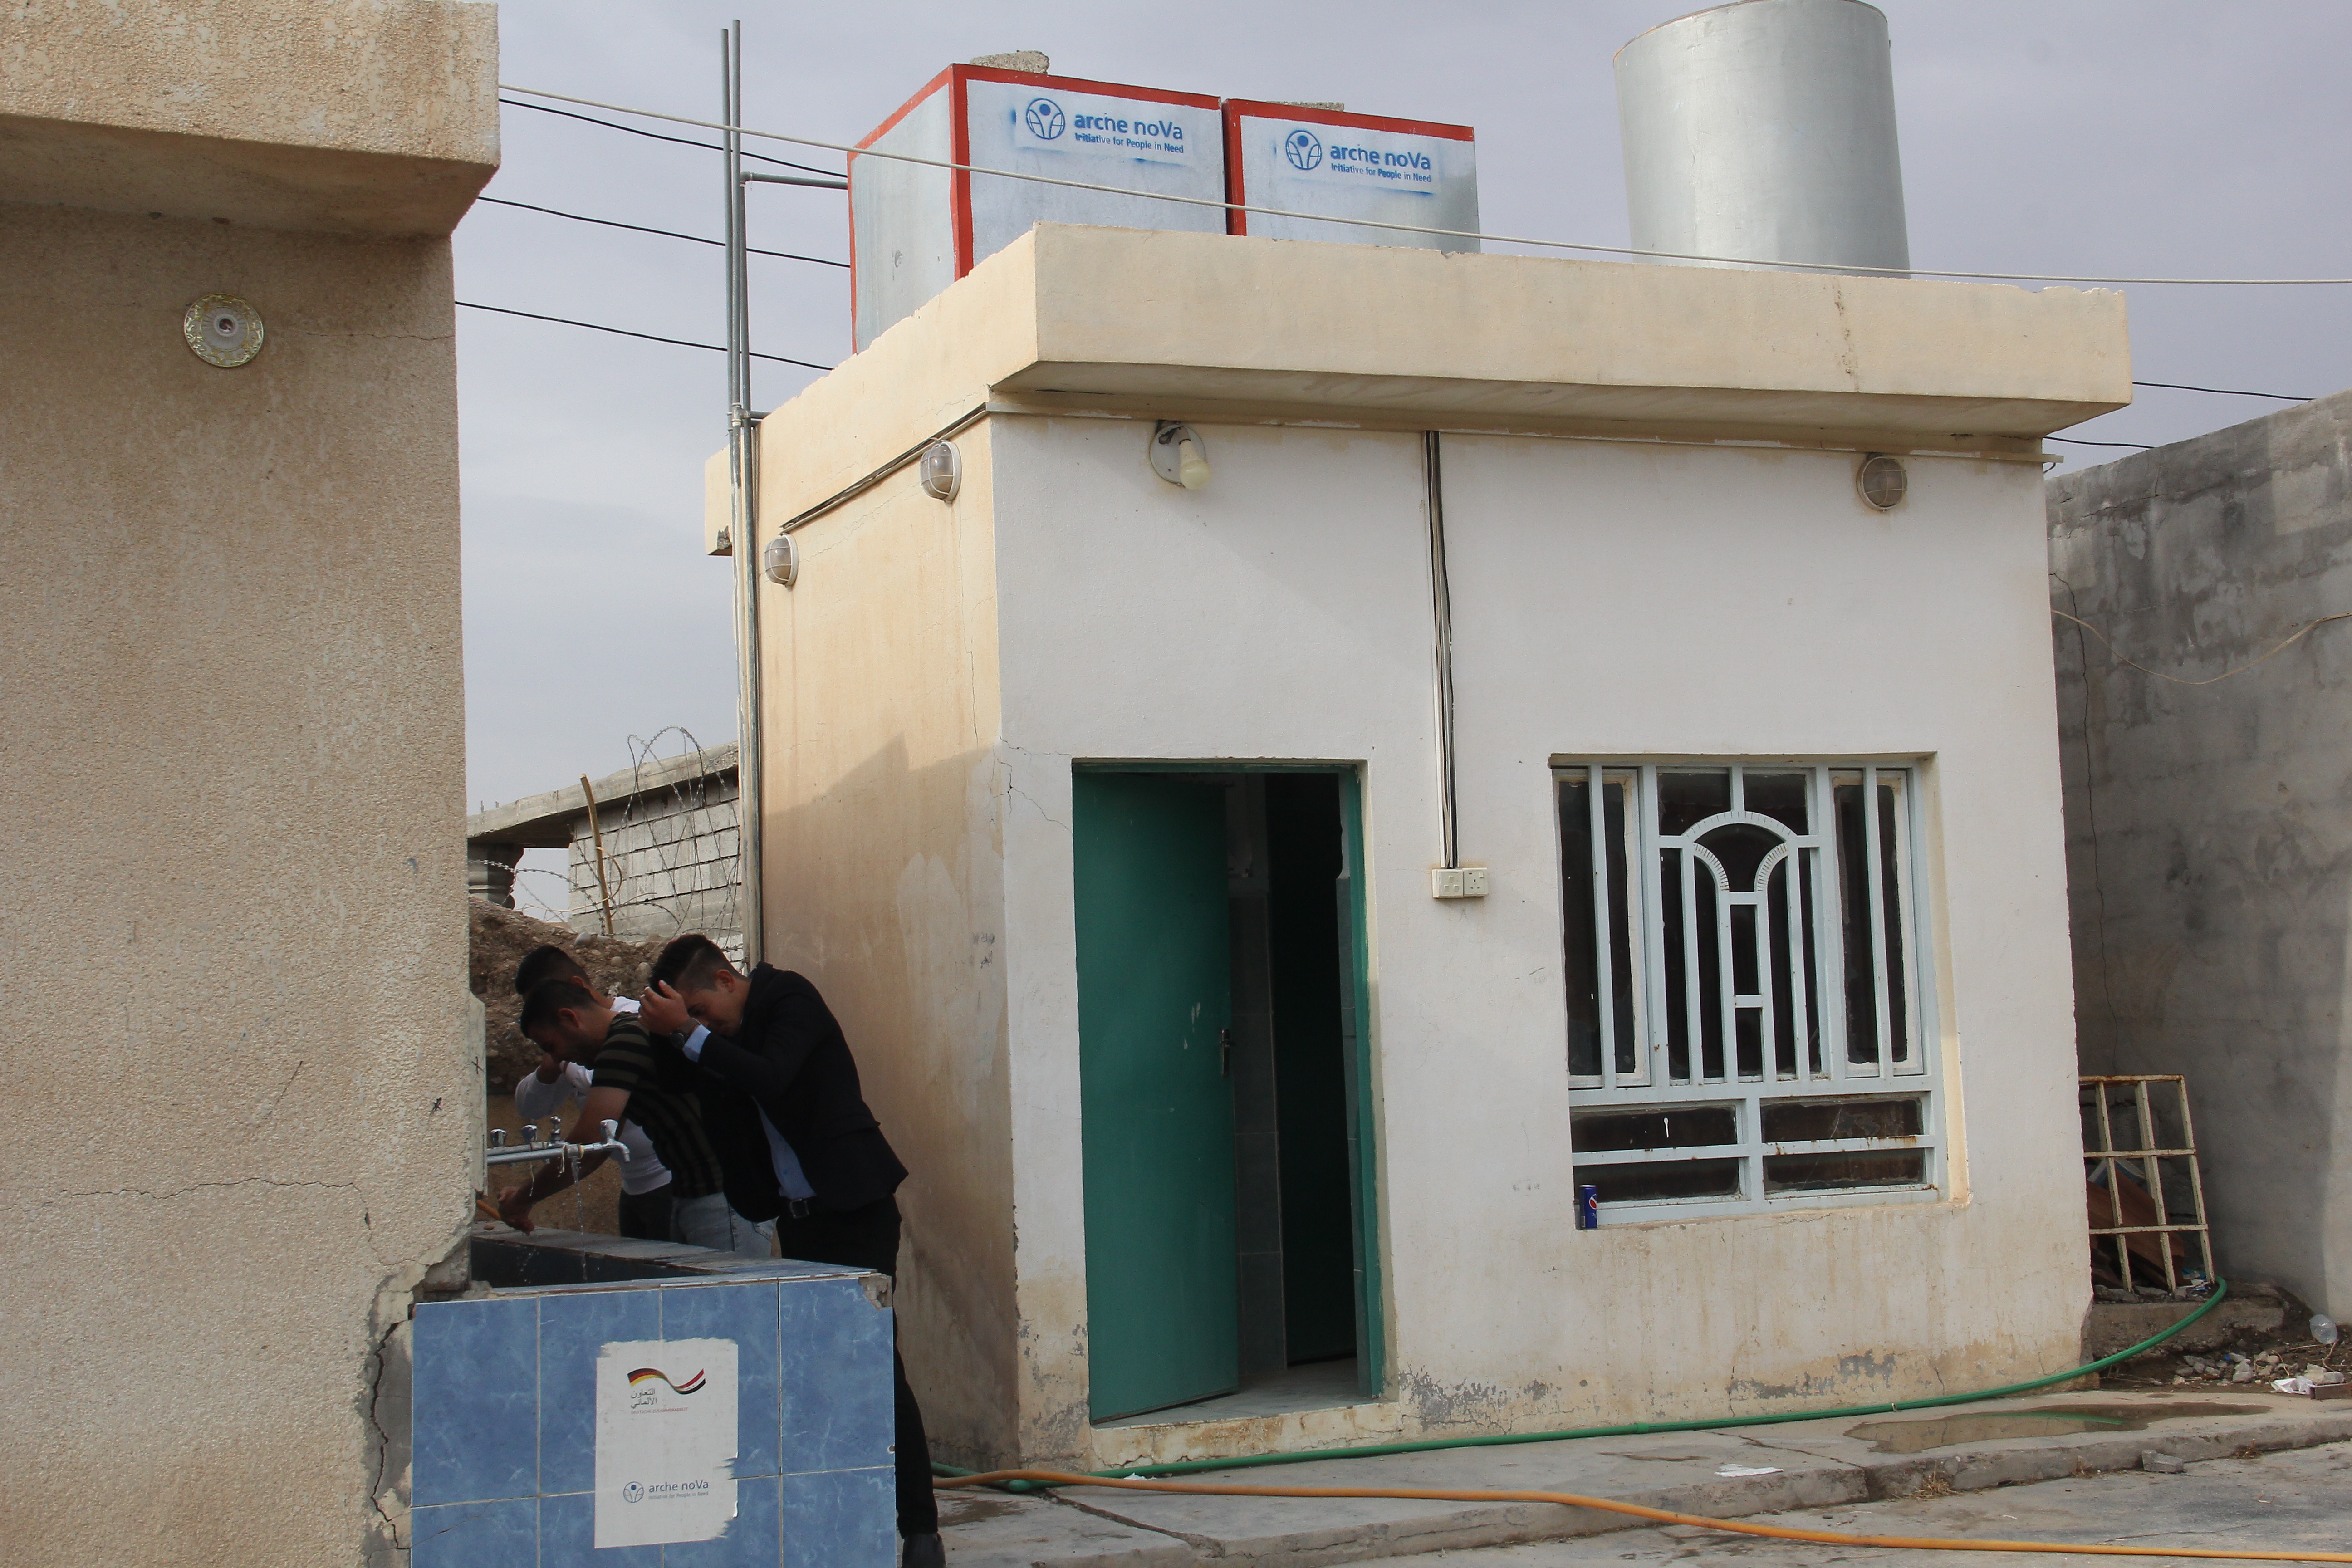 Sichere Toiletten bilden die Grundlage für das Recht auf Bildung - wie hier in Qalaa, Irak